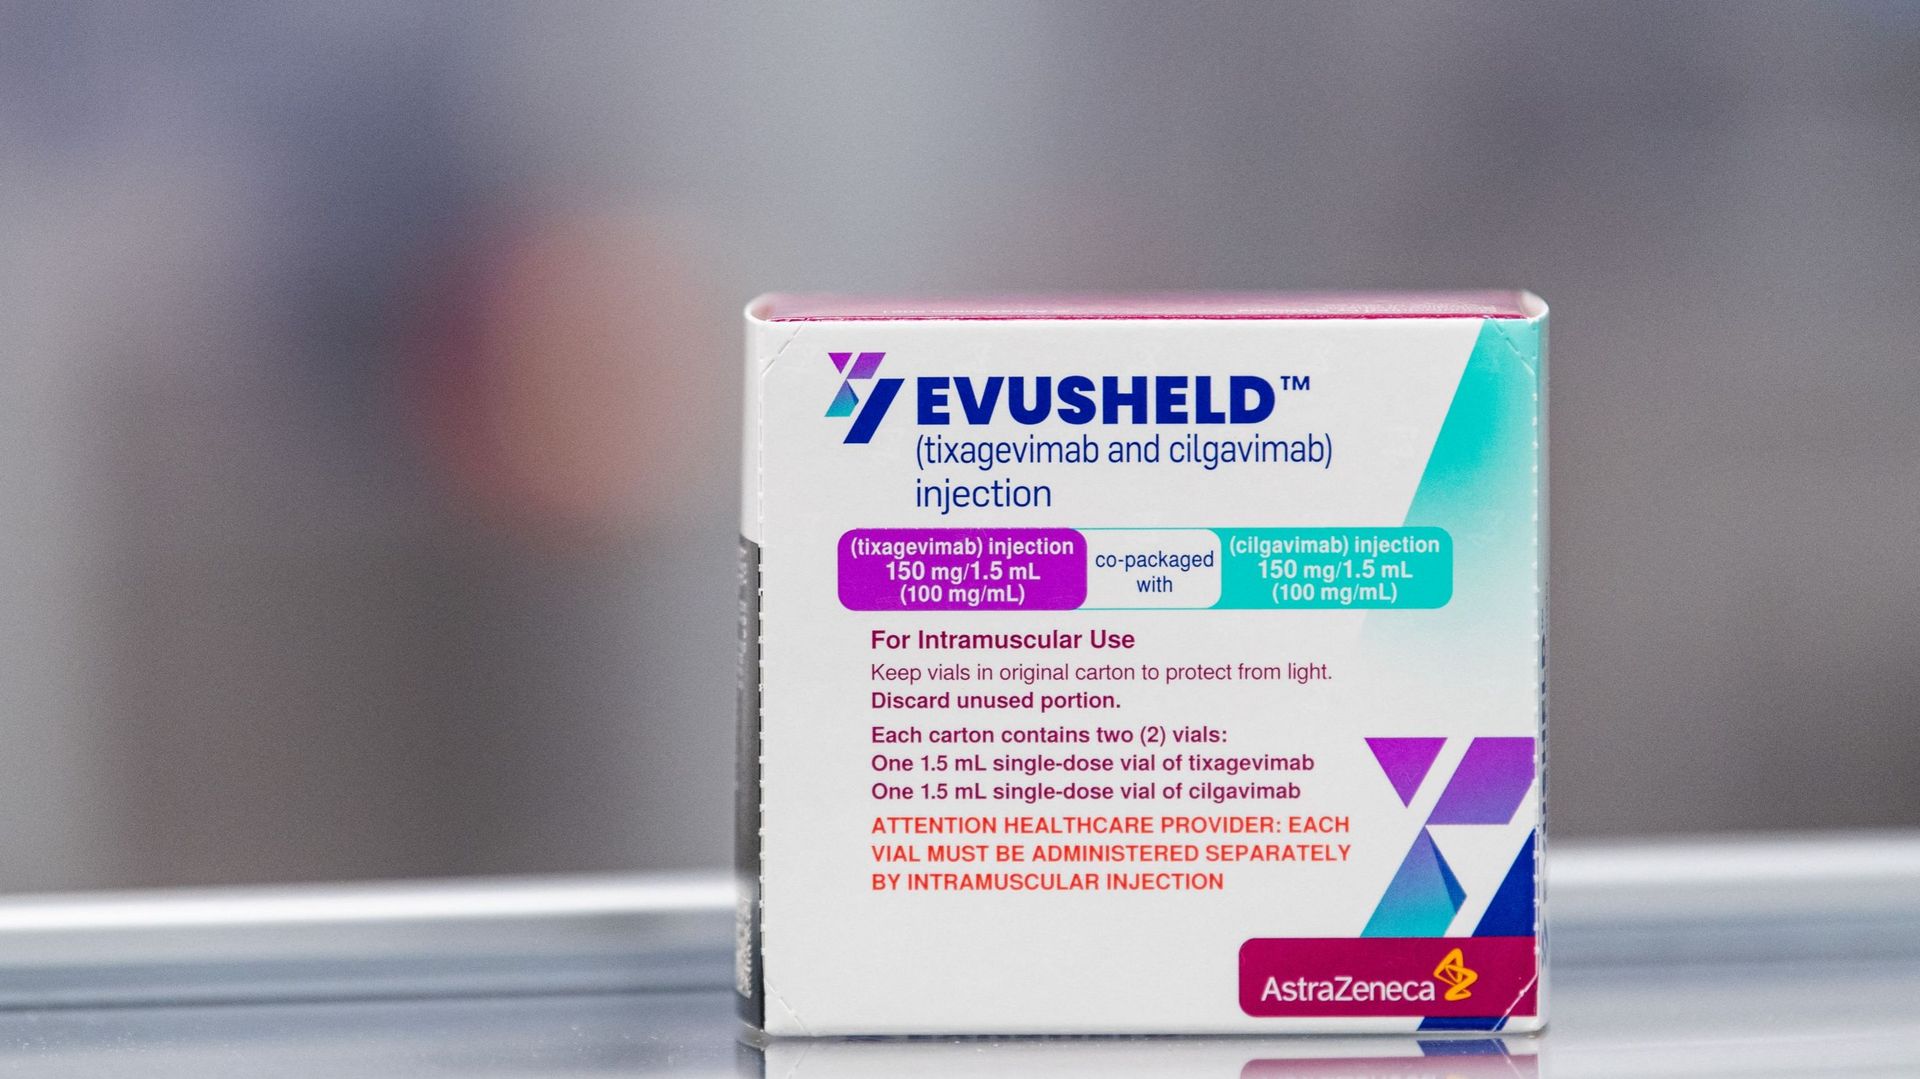 Une boîte d'Evusheld, un médicament pour la thérapie par anticorps développé par la société pharmaceutique AstraZeneca pour la prévention du COVID-19 chez les patients immunodéprimés.